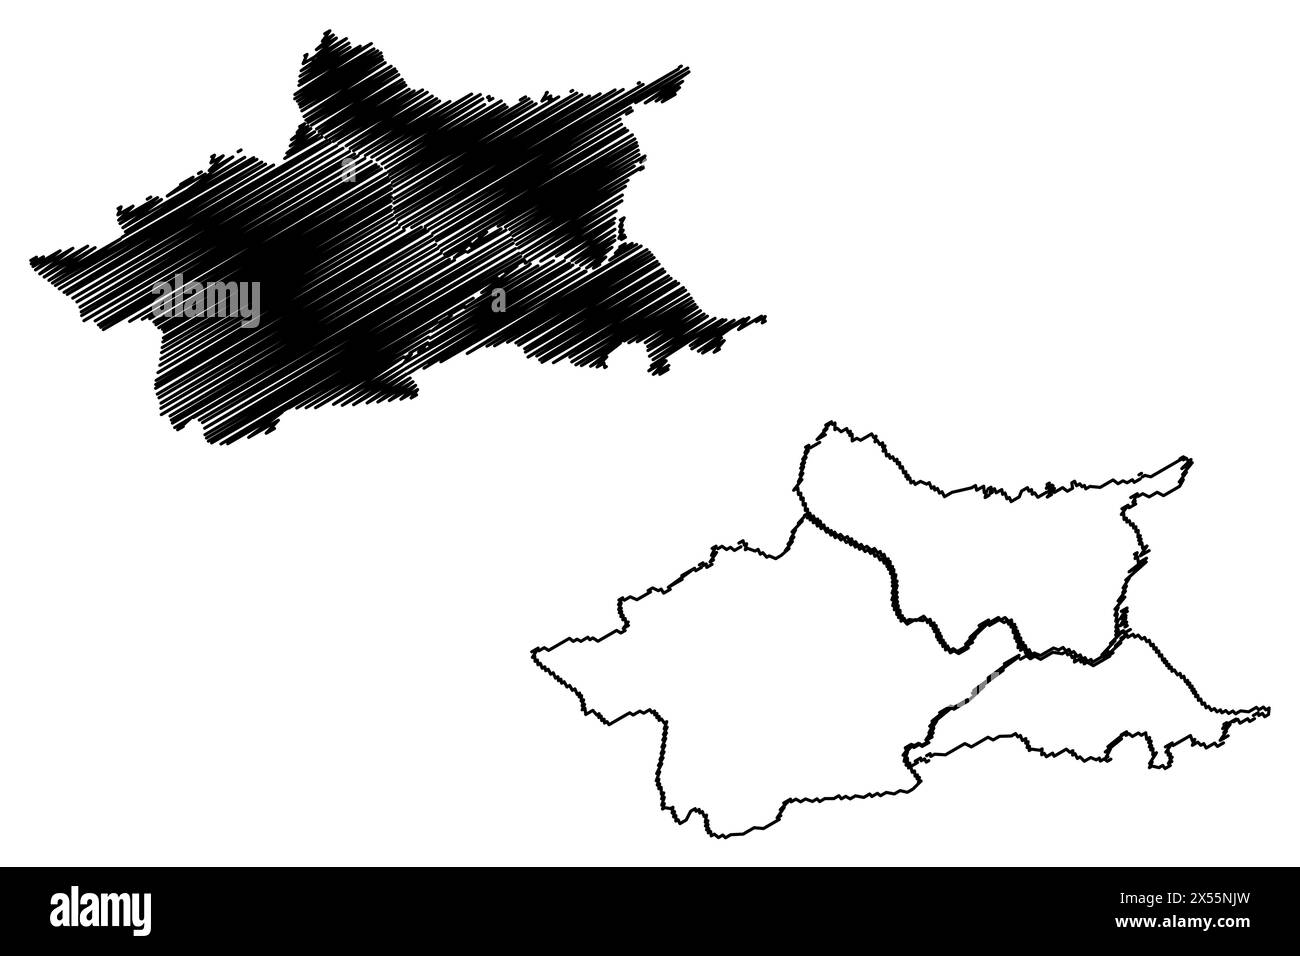 Stadt und Bezirk Villach (Republik Österreich oder Österreich, Kärnten oder Staat Kärnten) Karte Vektordarstellung, skizzierte Karte Stock Vektor